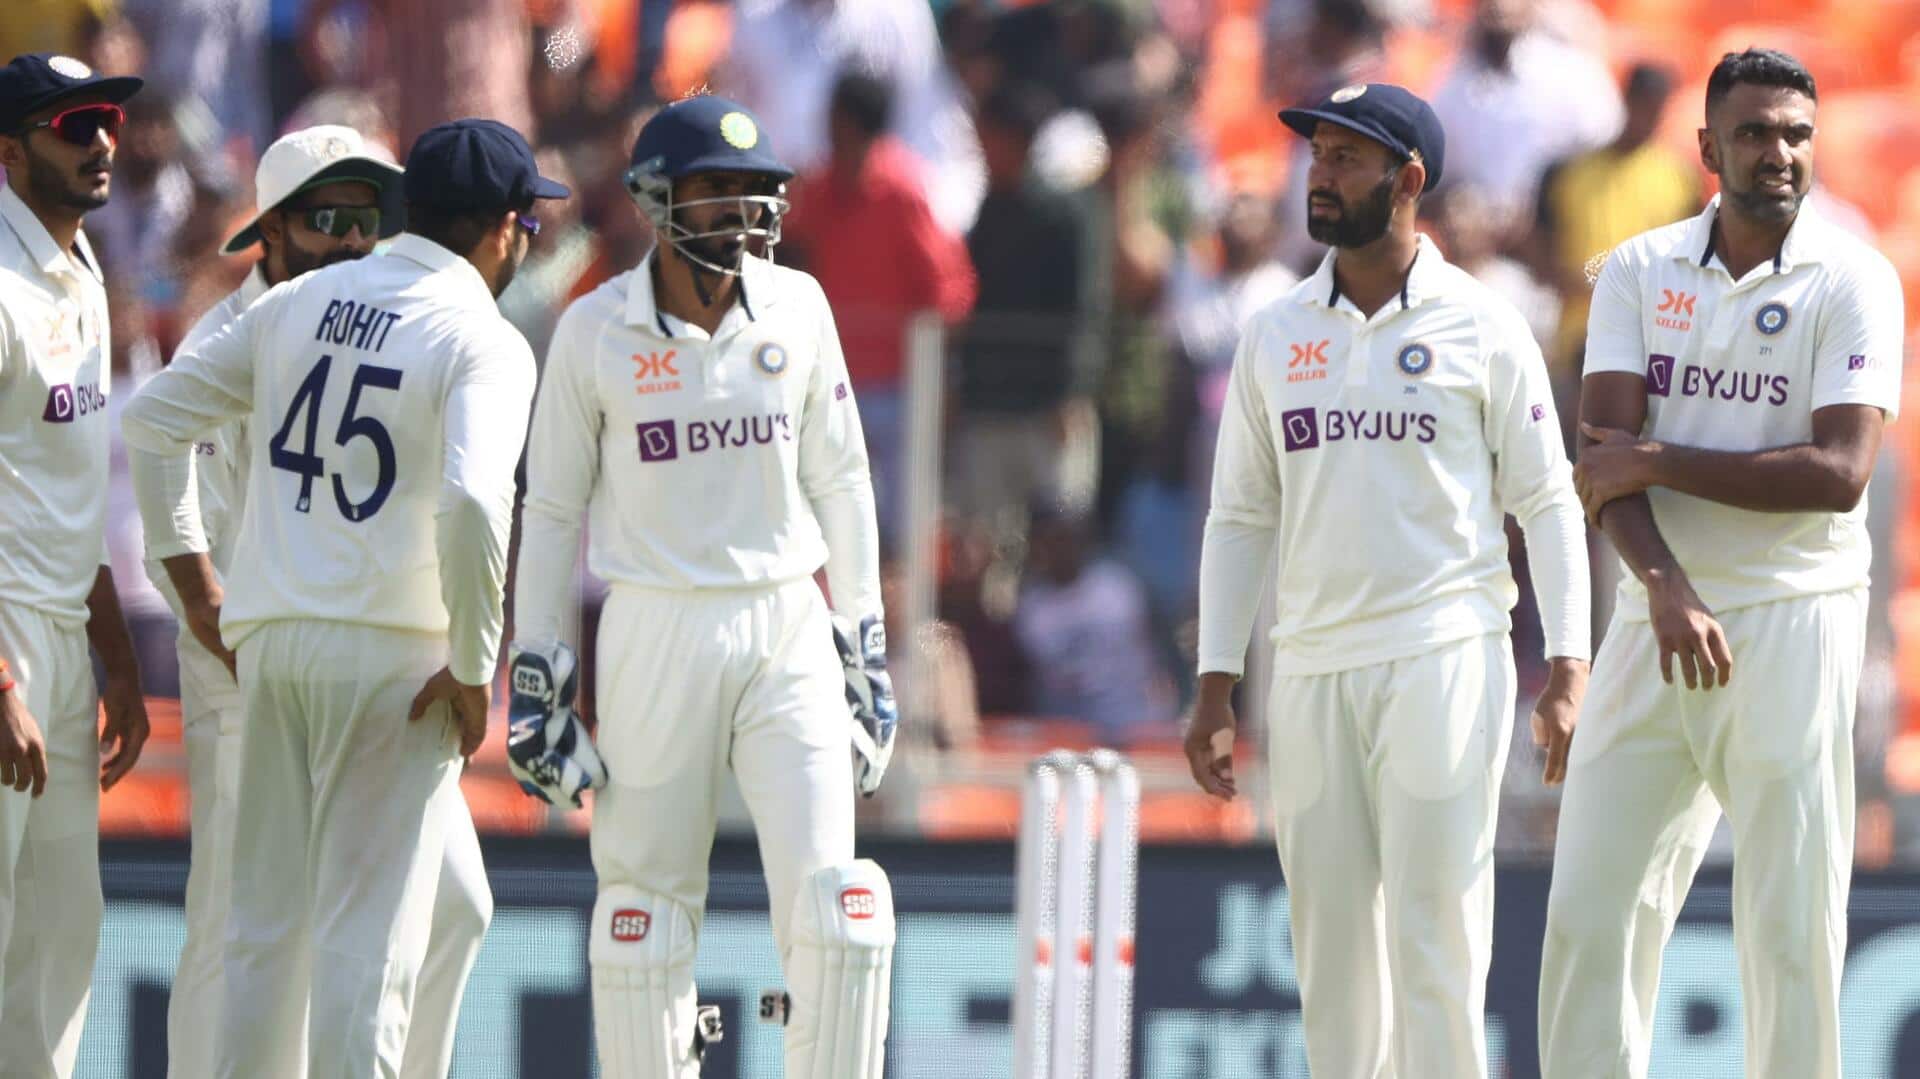 विश्व टेस्ट चैंपियनशिप: इस संस्करण में भारतीय क्रिकेट टीम का कैसा रहा है प्रदर्शन?